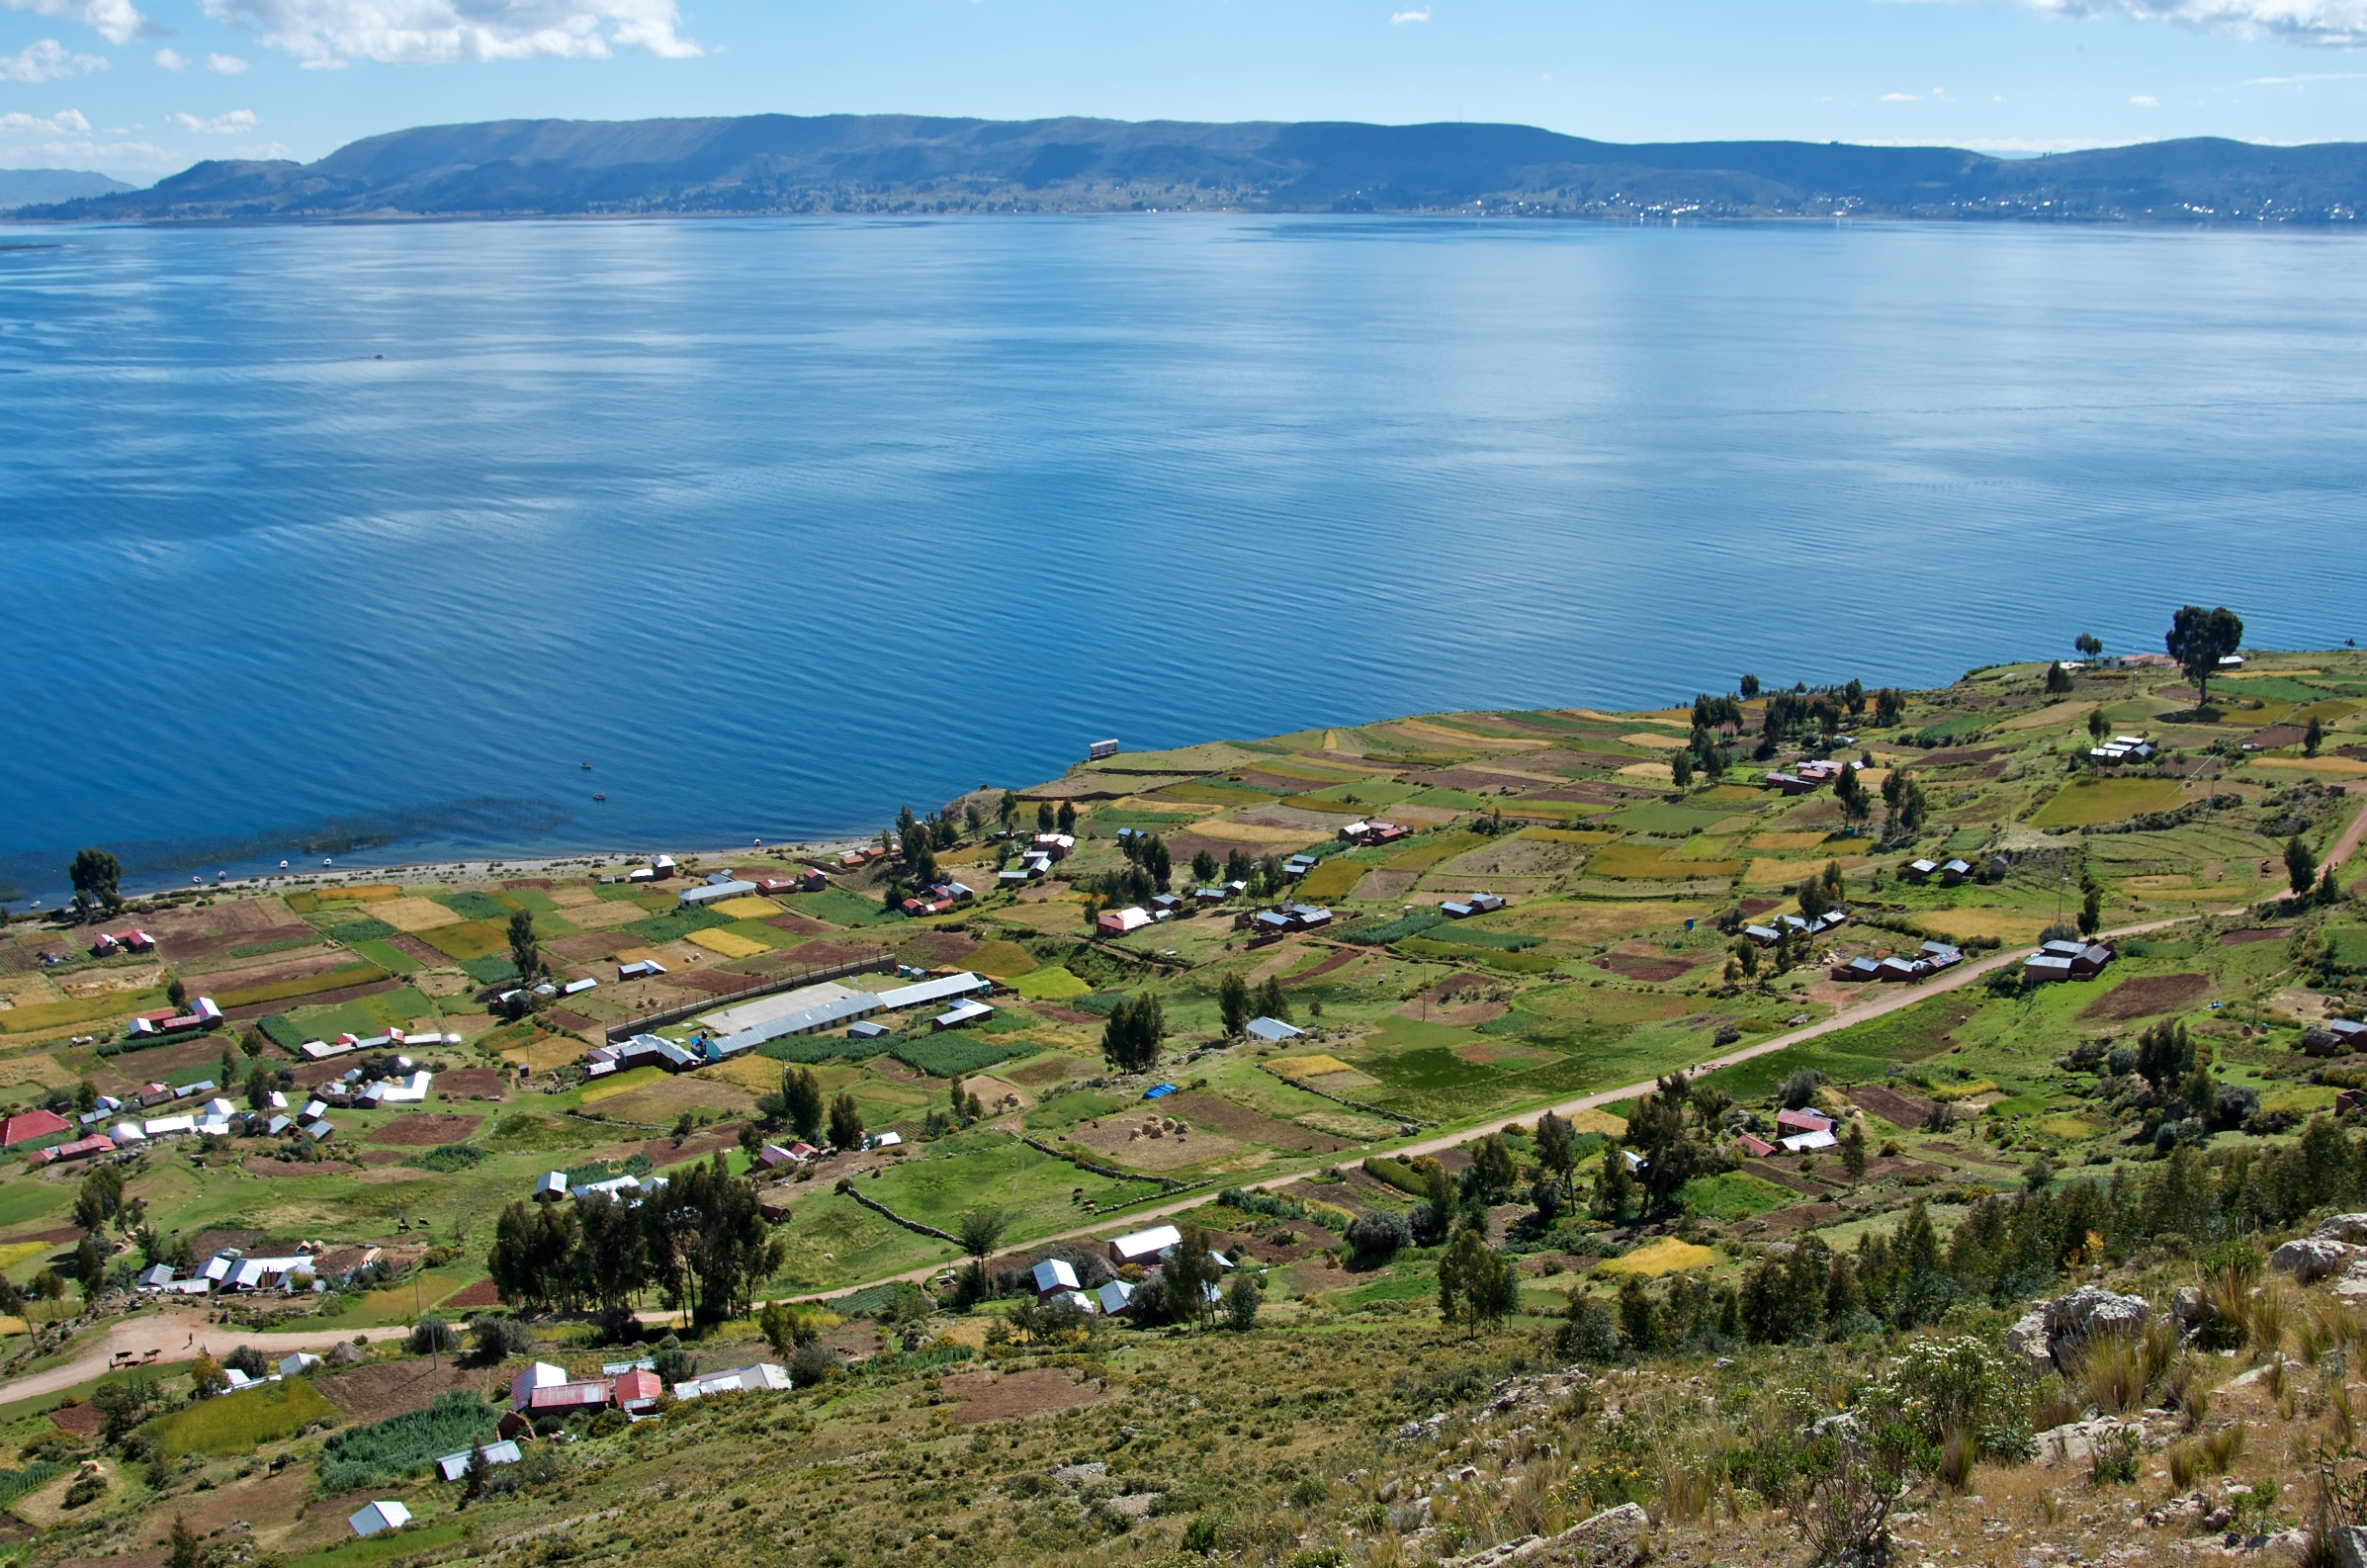  Luquina Village from hill, Lake Titicaca, Peru 